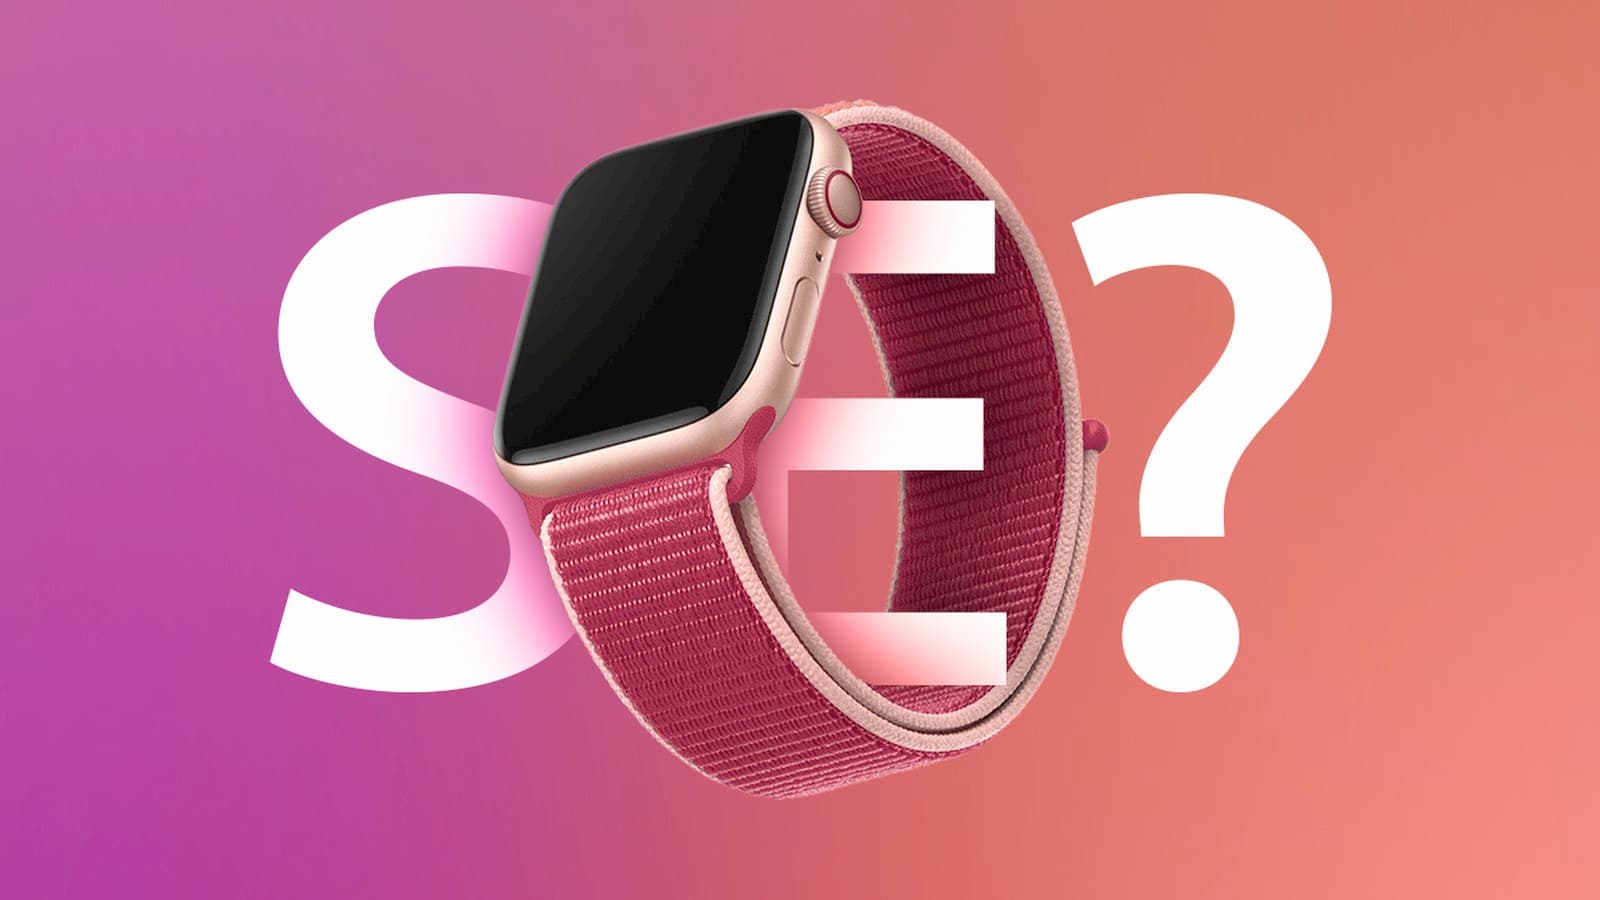 低價款 Apple Watch SE 規格與價格提前曝光